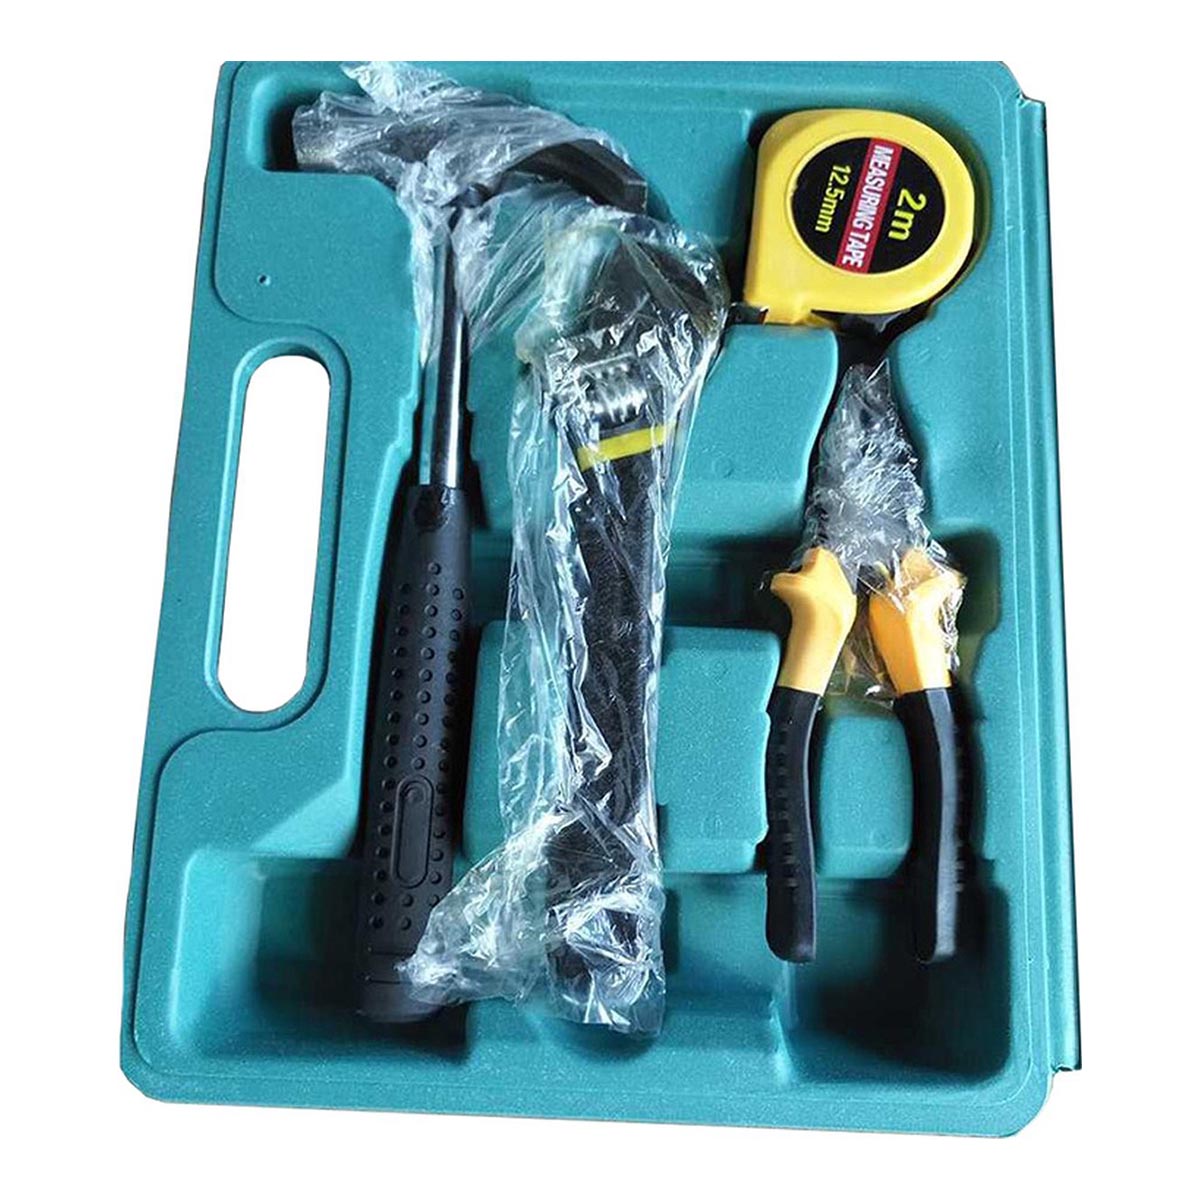 <tc>Ariko</tc> Tool set case - DIY - Tool case - Tool set - 16 Pieces